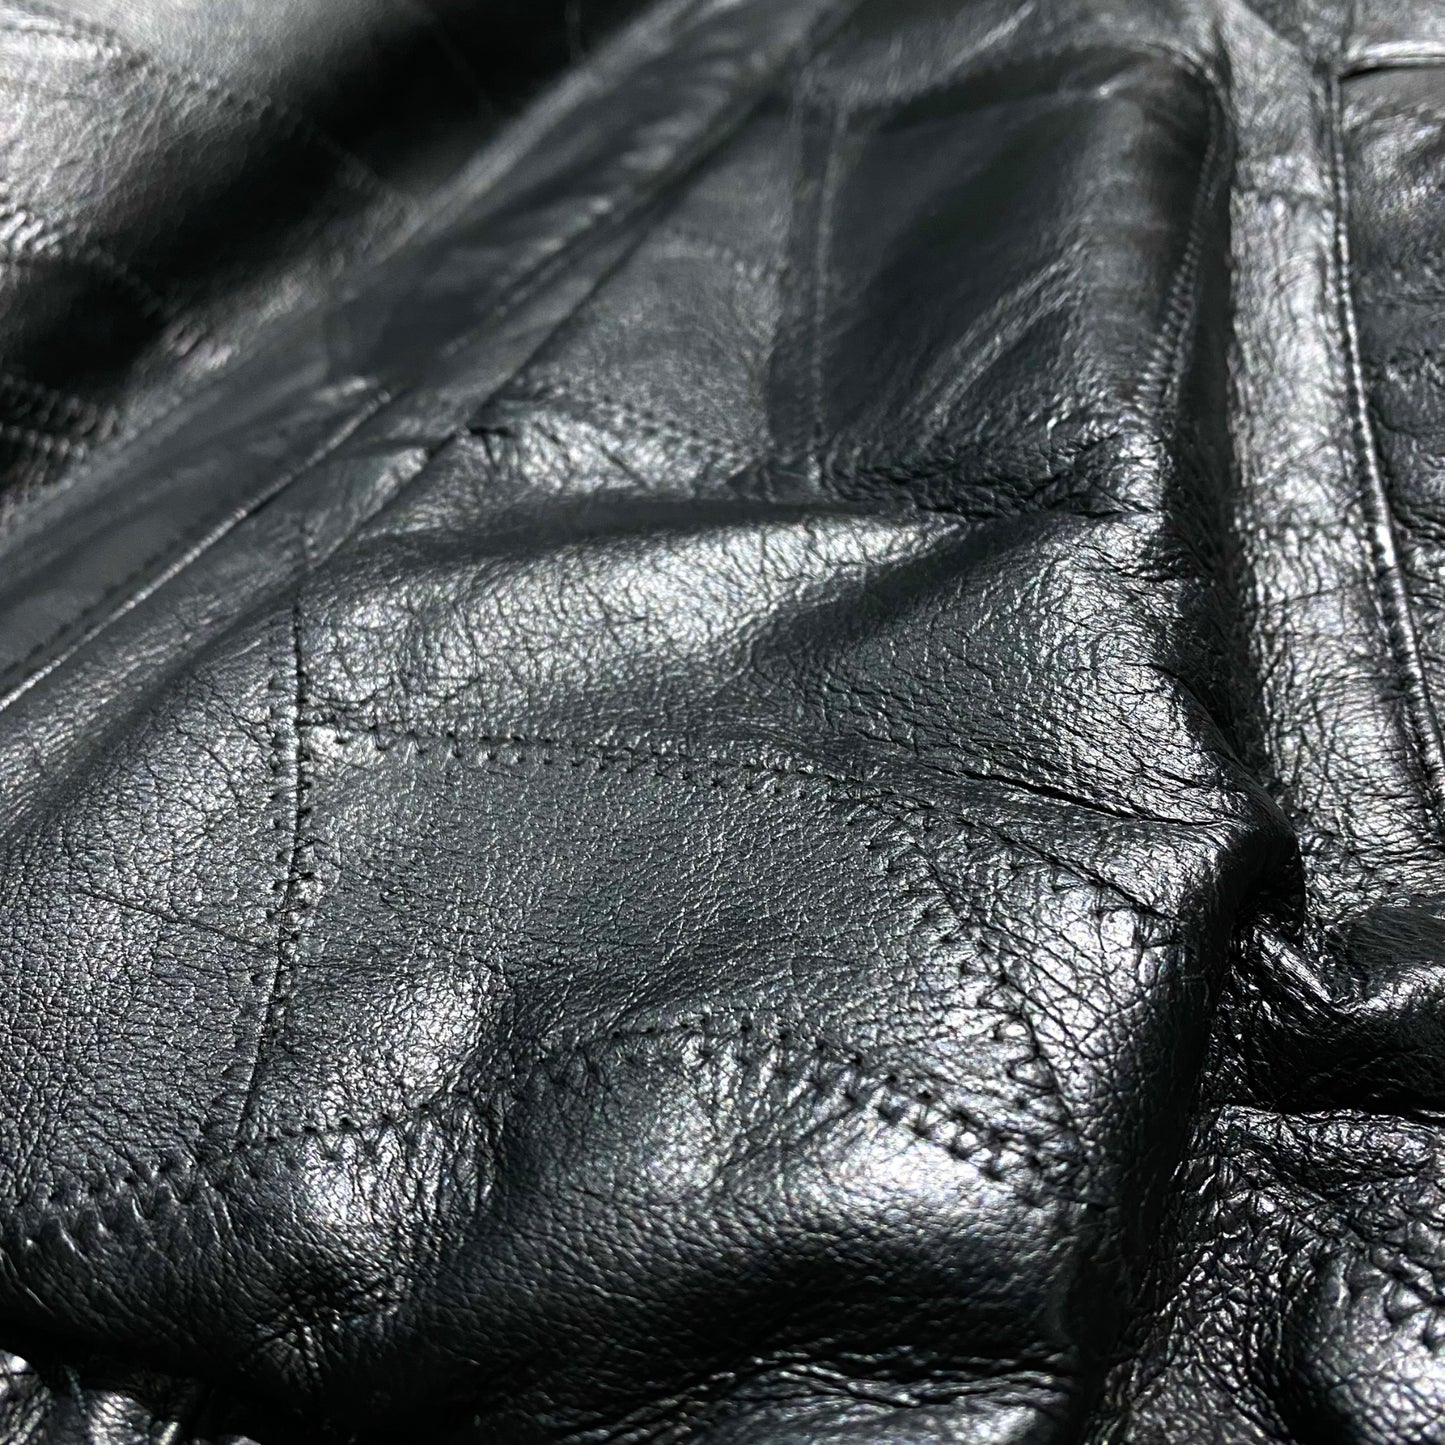 Tsugihagi design leather jacket